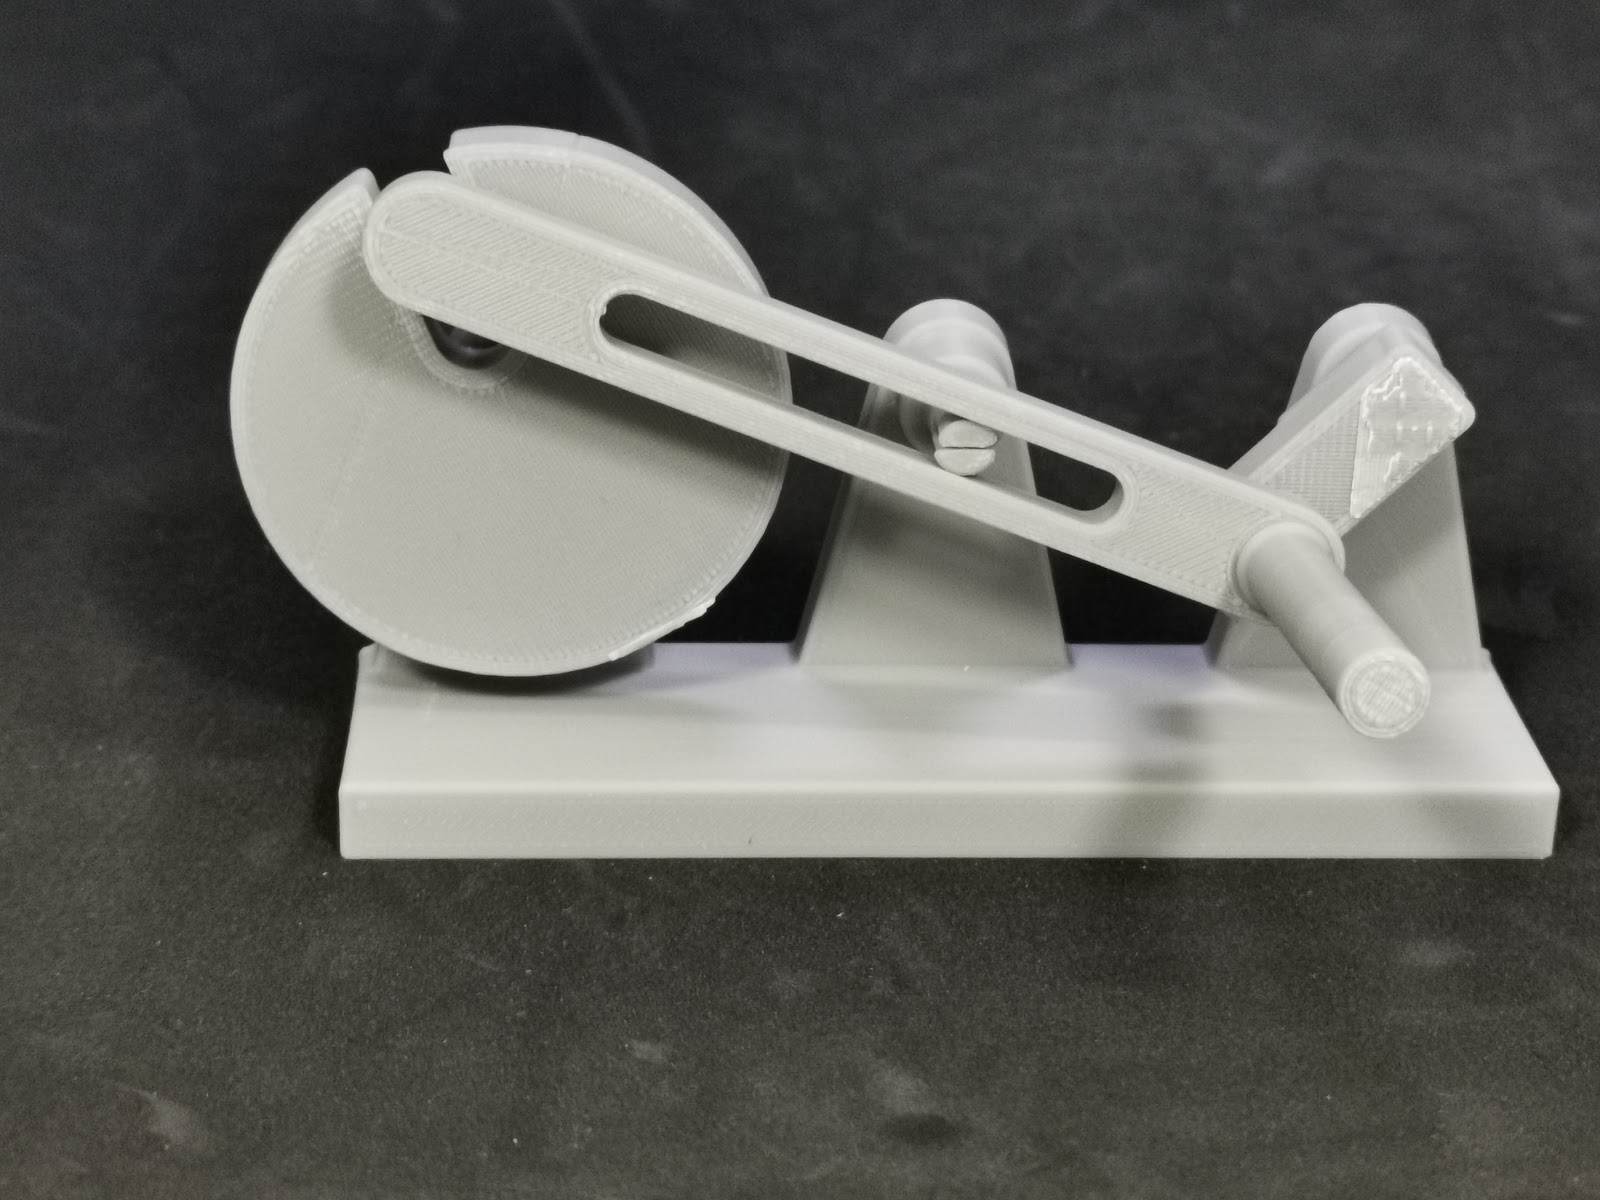 The 3D printed crank flywheel.